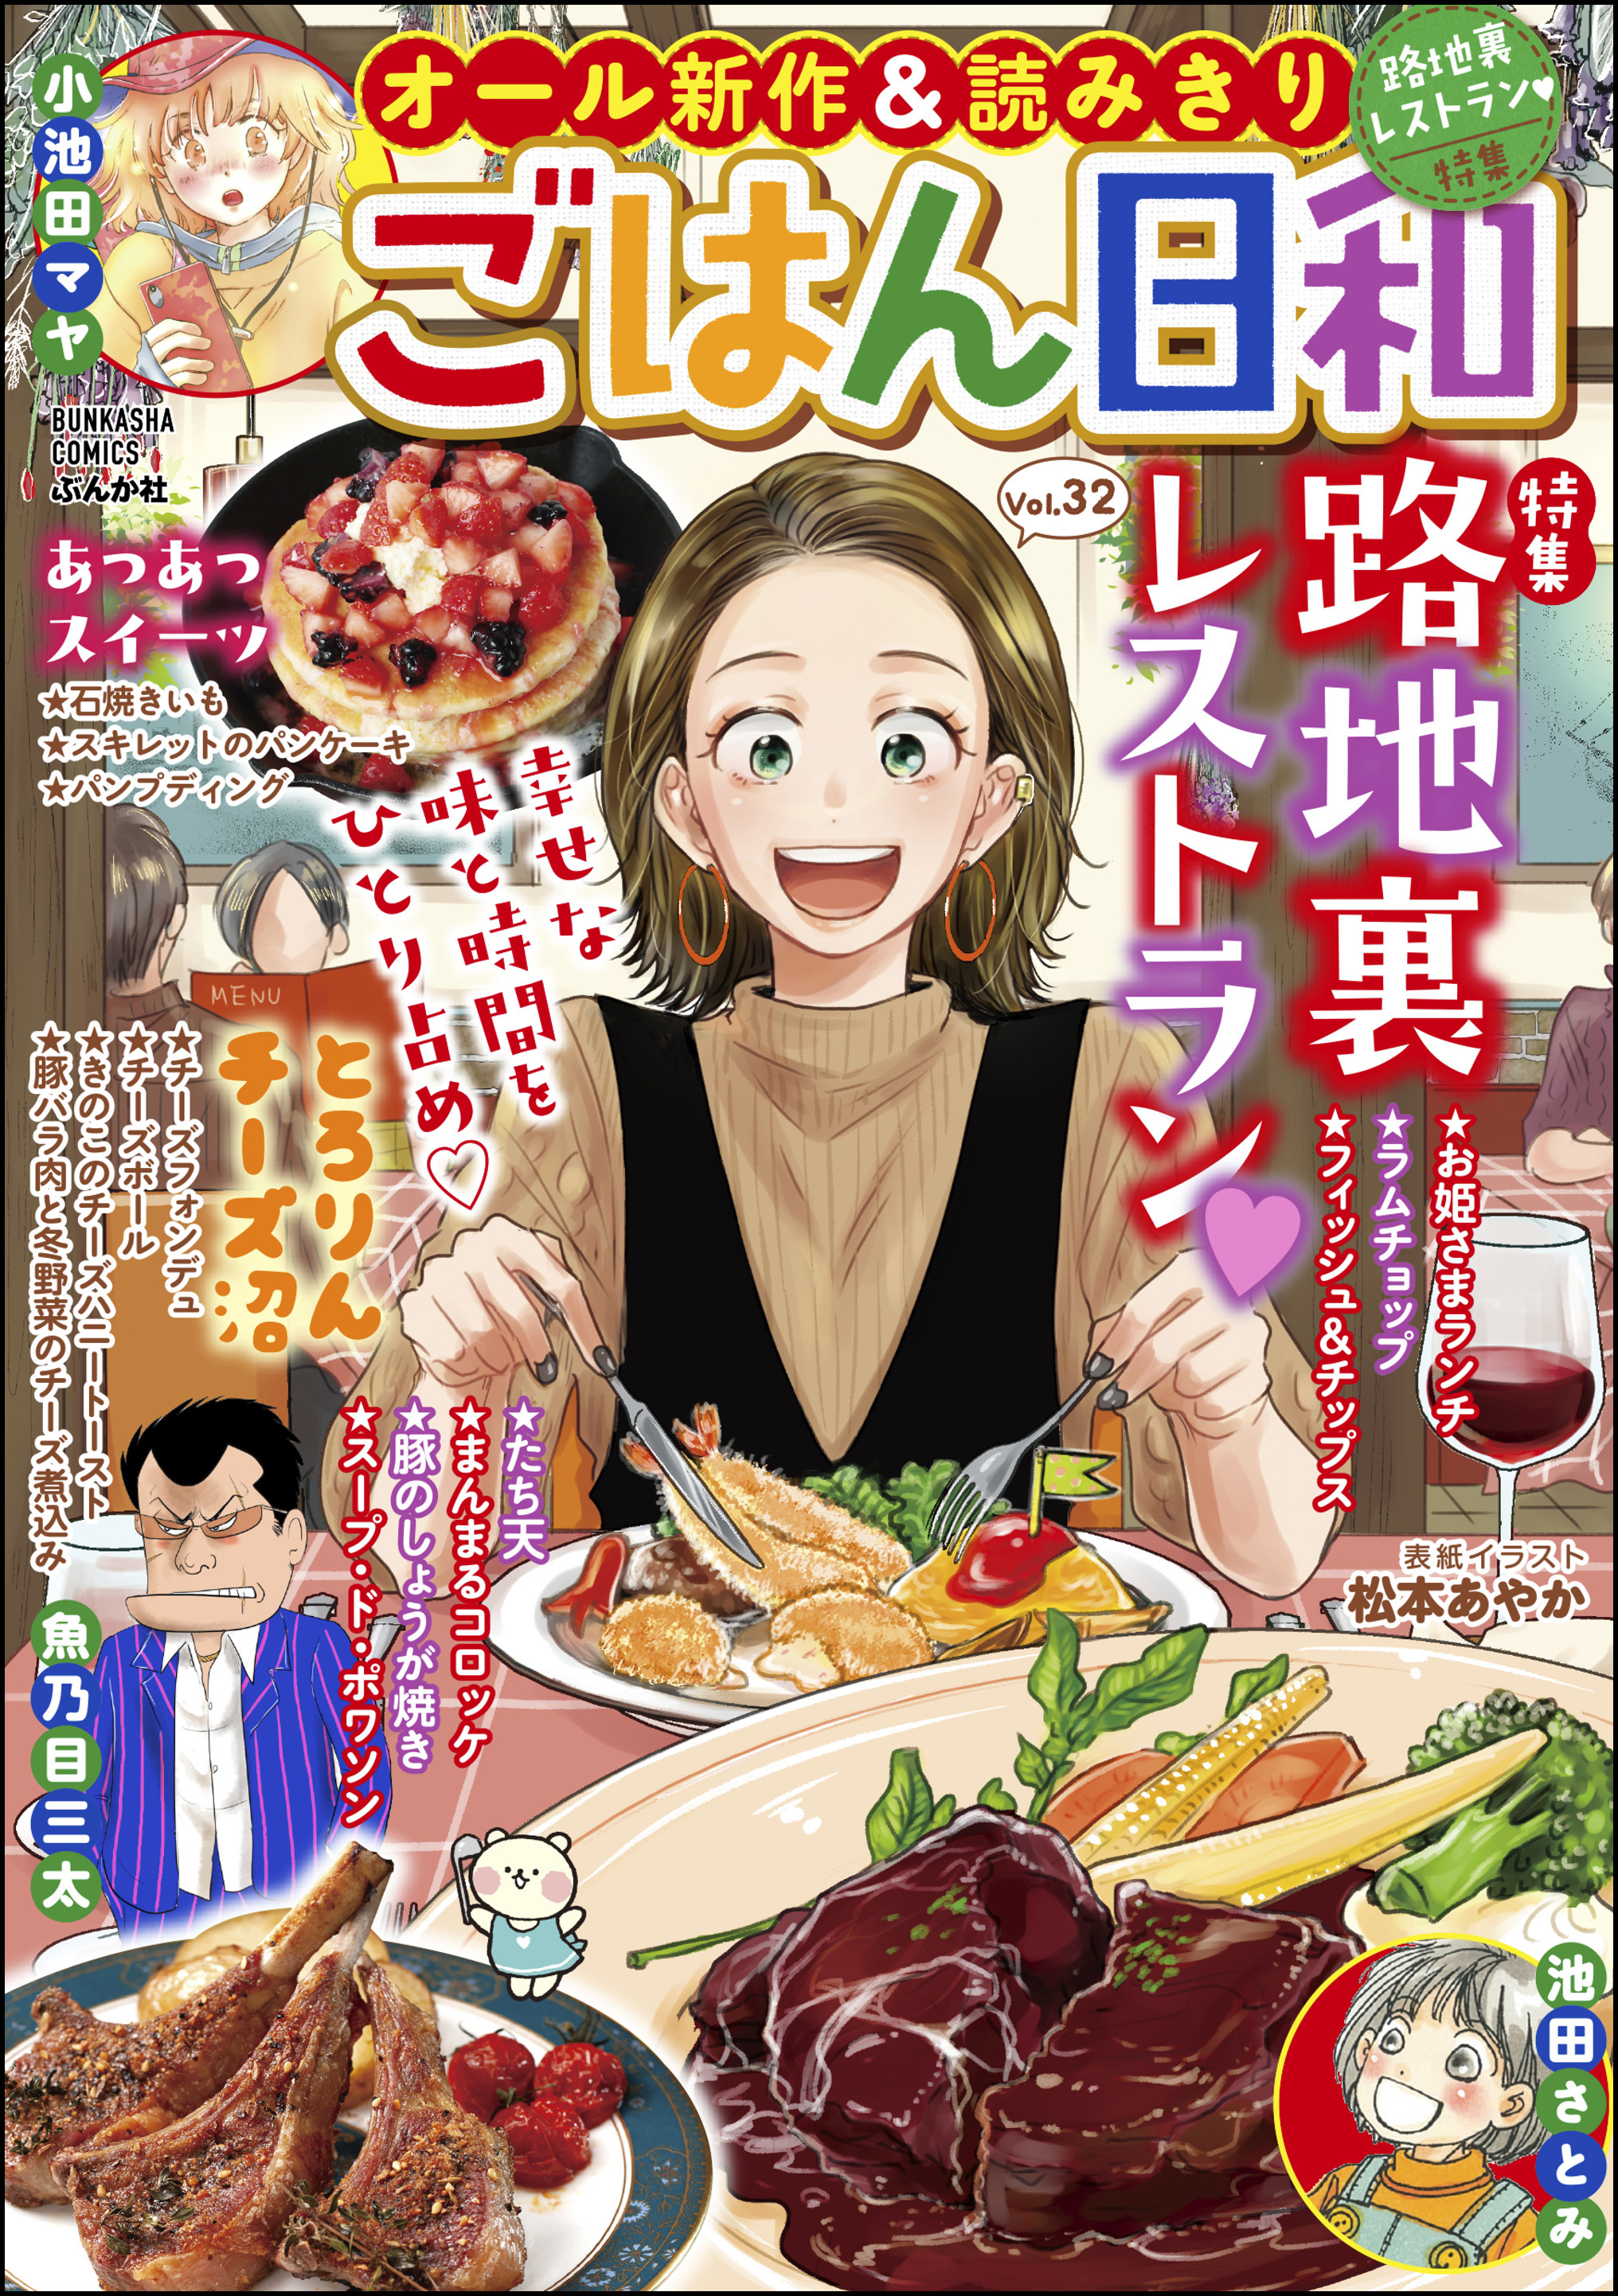 ごはん日和路地裏レストラン Vol.32 - 松本あやか/池田さとみ - 漫画